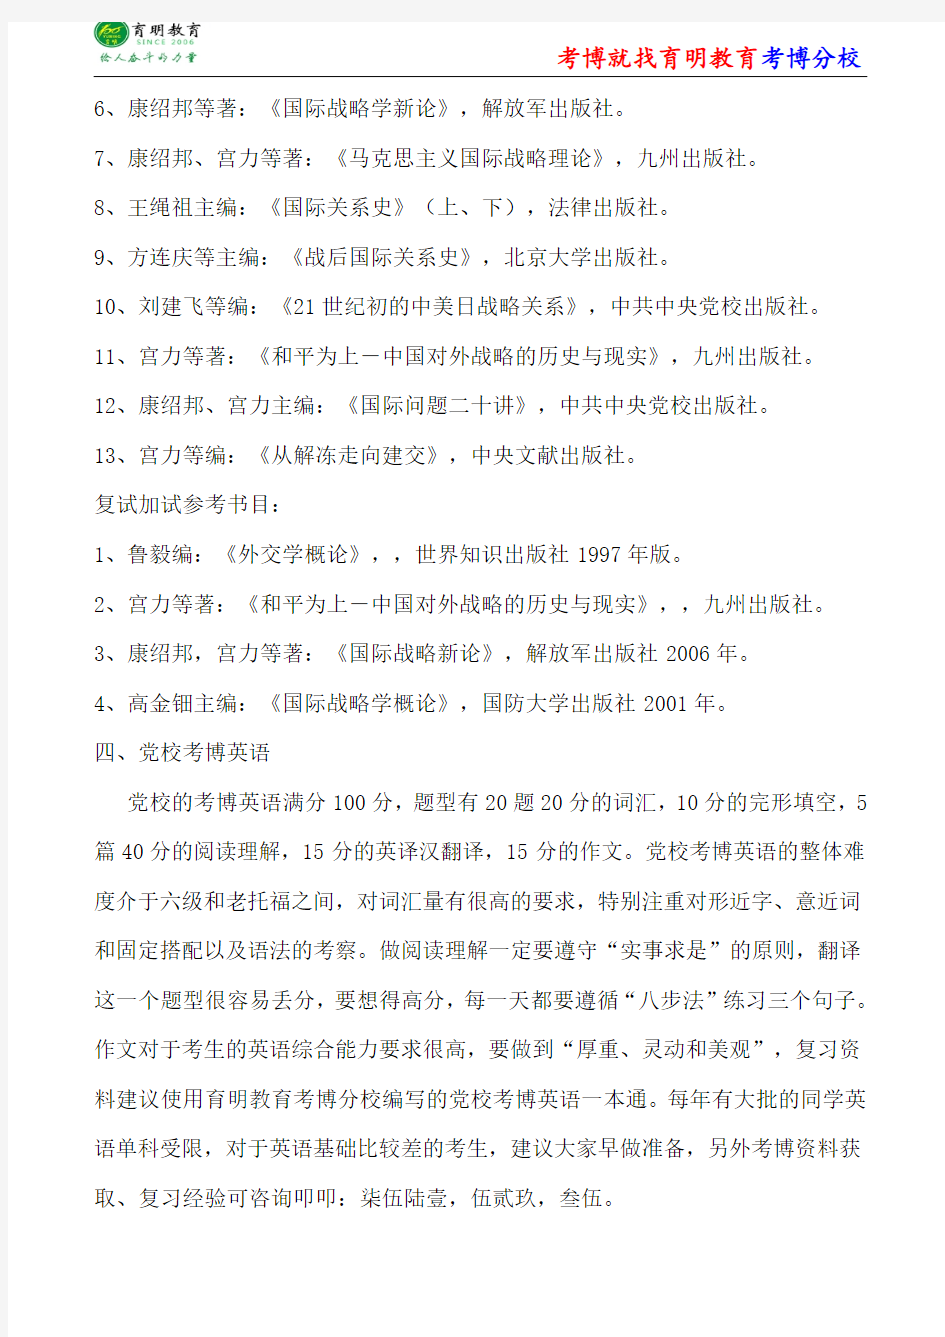 中共中央党校李云龙大国关系考博参考书-考博笔记资料-考博辅导